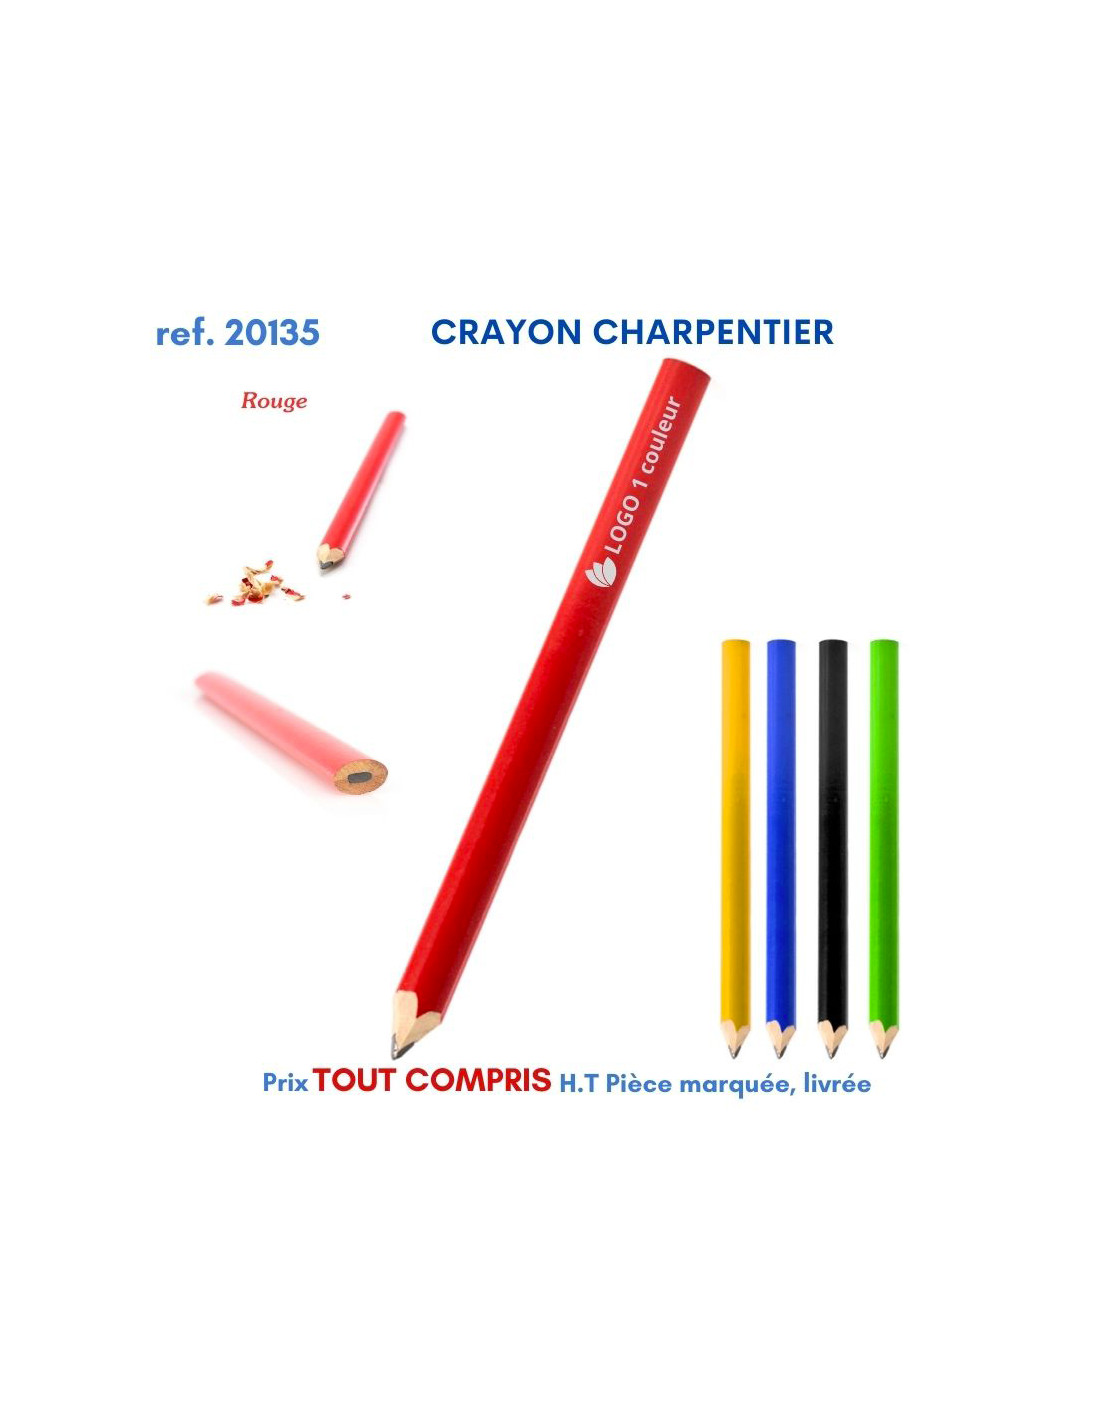 Crayon charpentier personnalisé publicitaire personnalisé